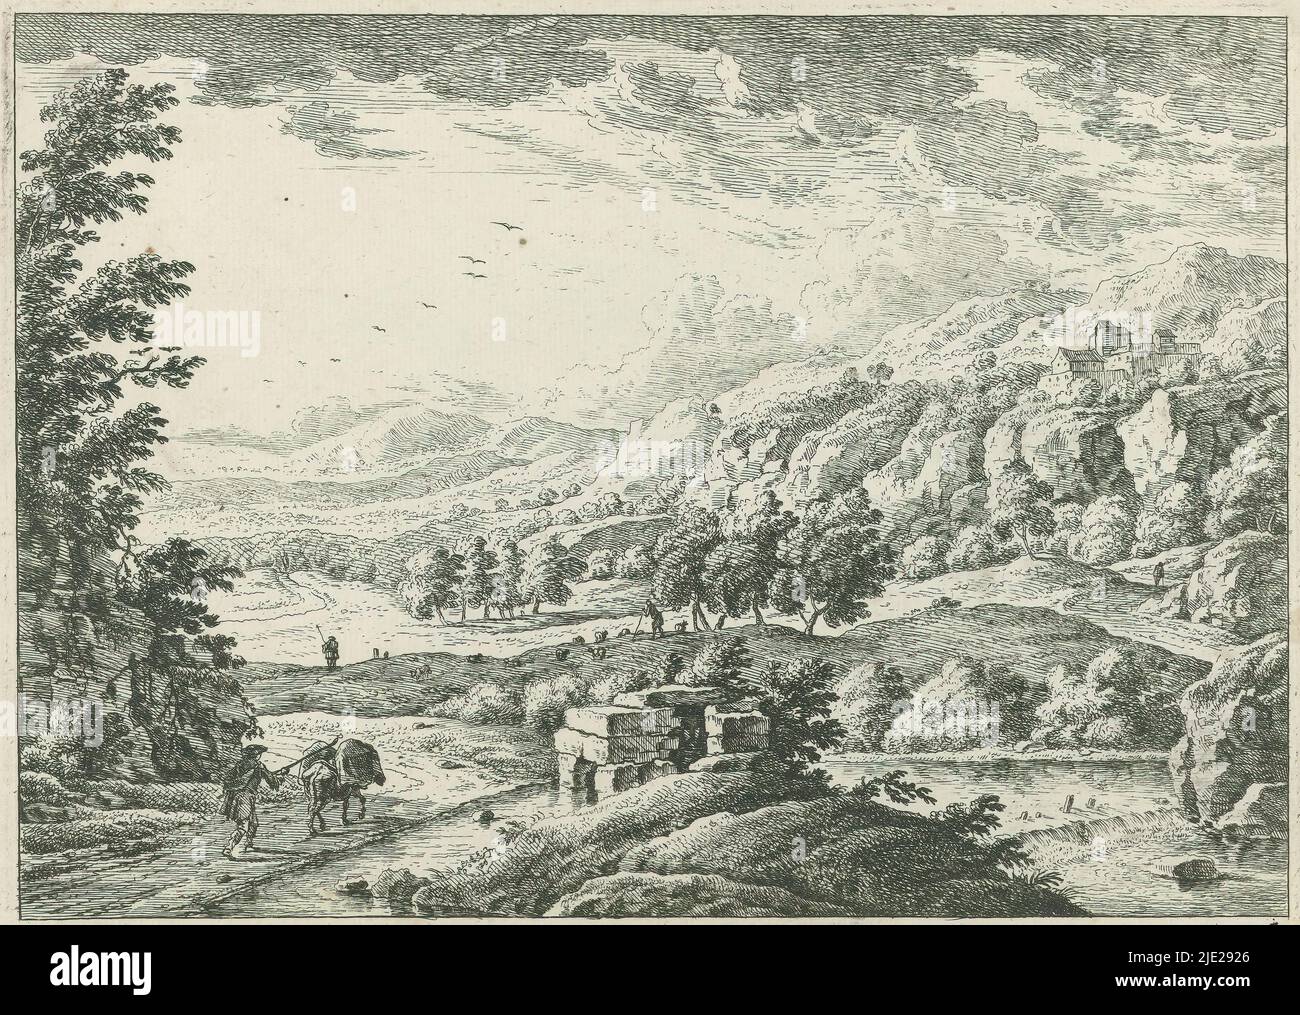 Paesaggio con fiume, tipografia: Monogrammist MEG, (menzionato sull'oggetto), dopo disegno di: anonimo, Germania, 1700 - 1730, carta, incisione, altezza 173 mm x larghezza 237 mm Foto Stock